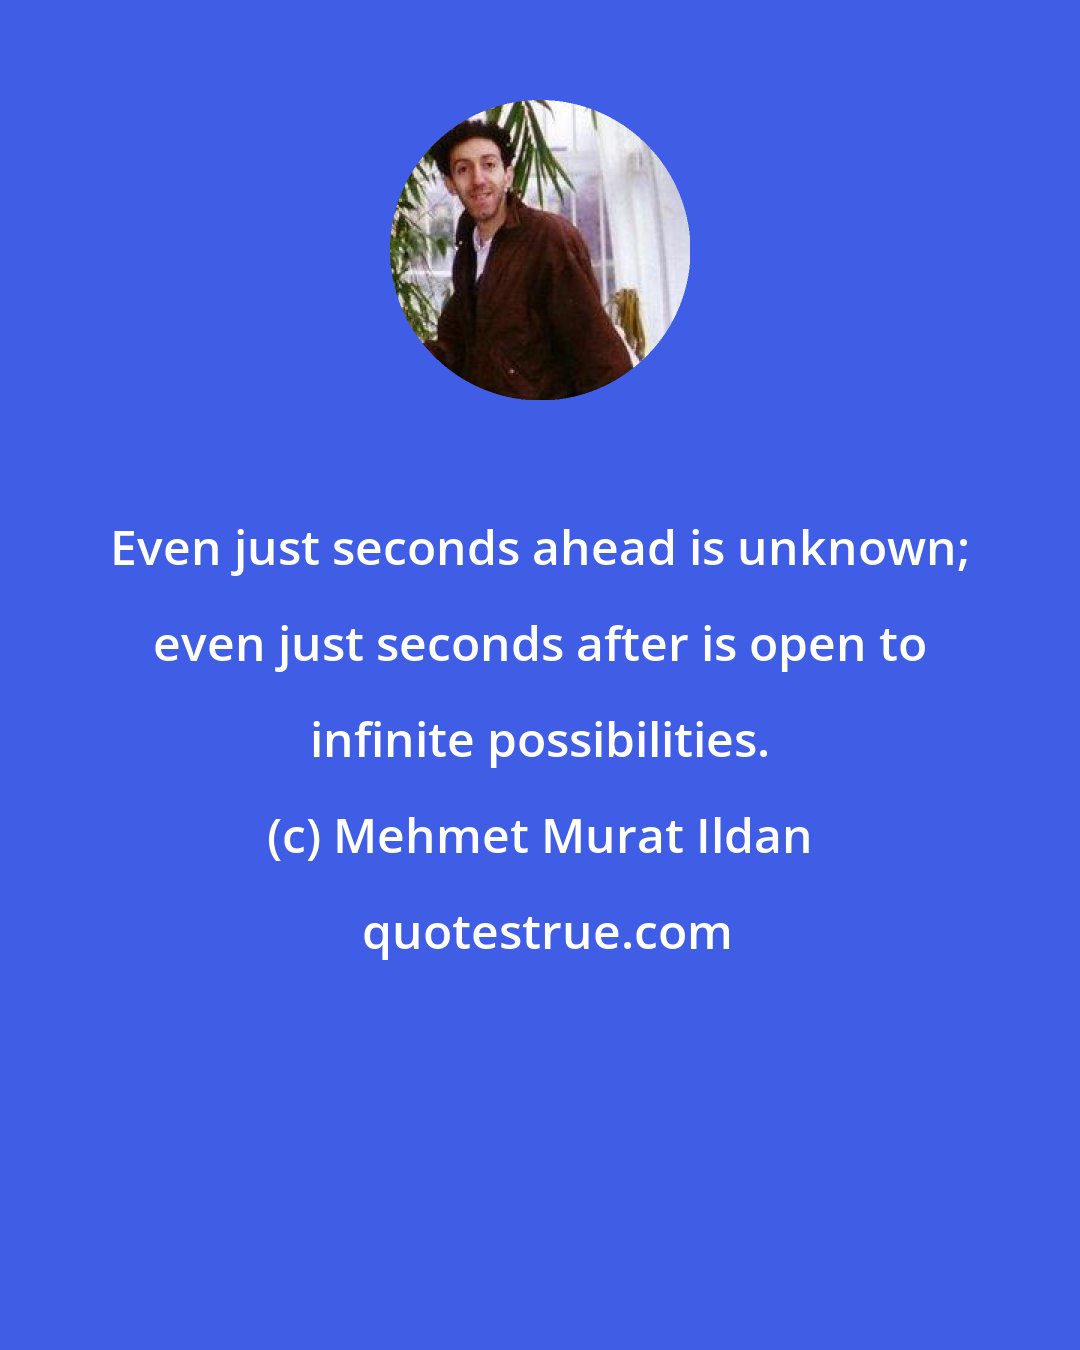 Mehmet Murat Ildan: Even just seconds ahead is unknown; even just seconds after is open to infinite possibilities.